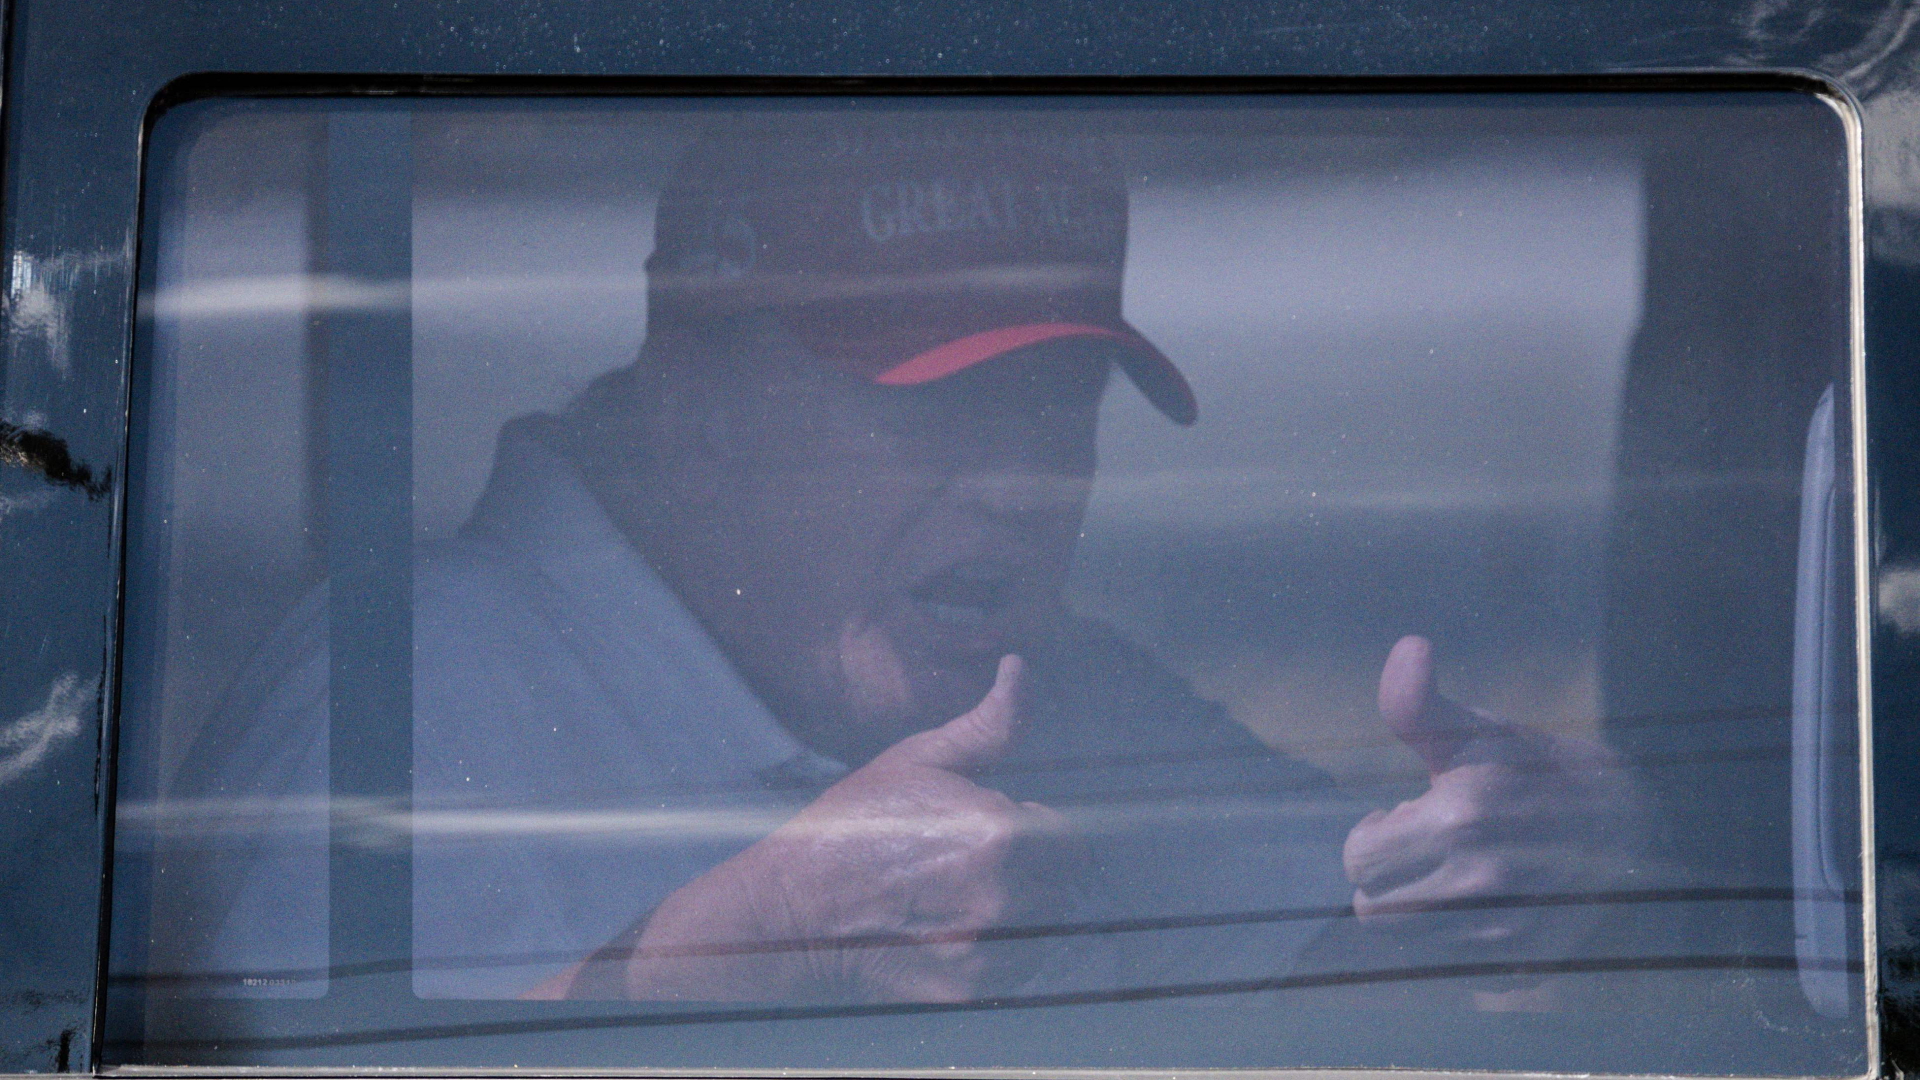 Der ehemalige US-Präsident Donald Trump sitzt in seiner Limousine und streckt zwei Daumen in die Luft.